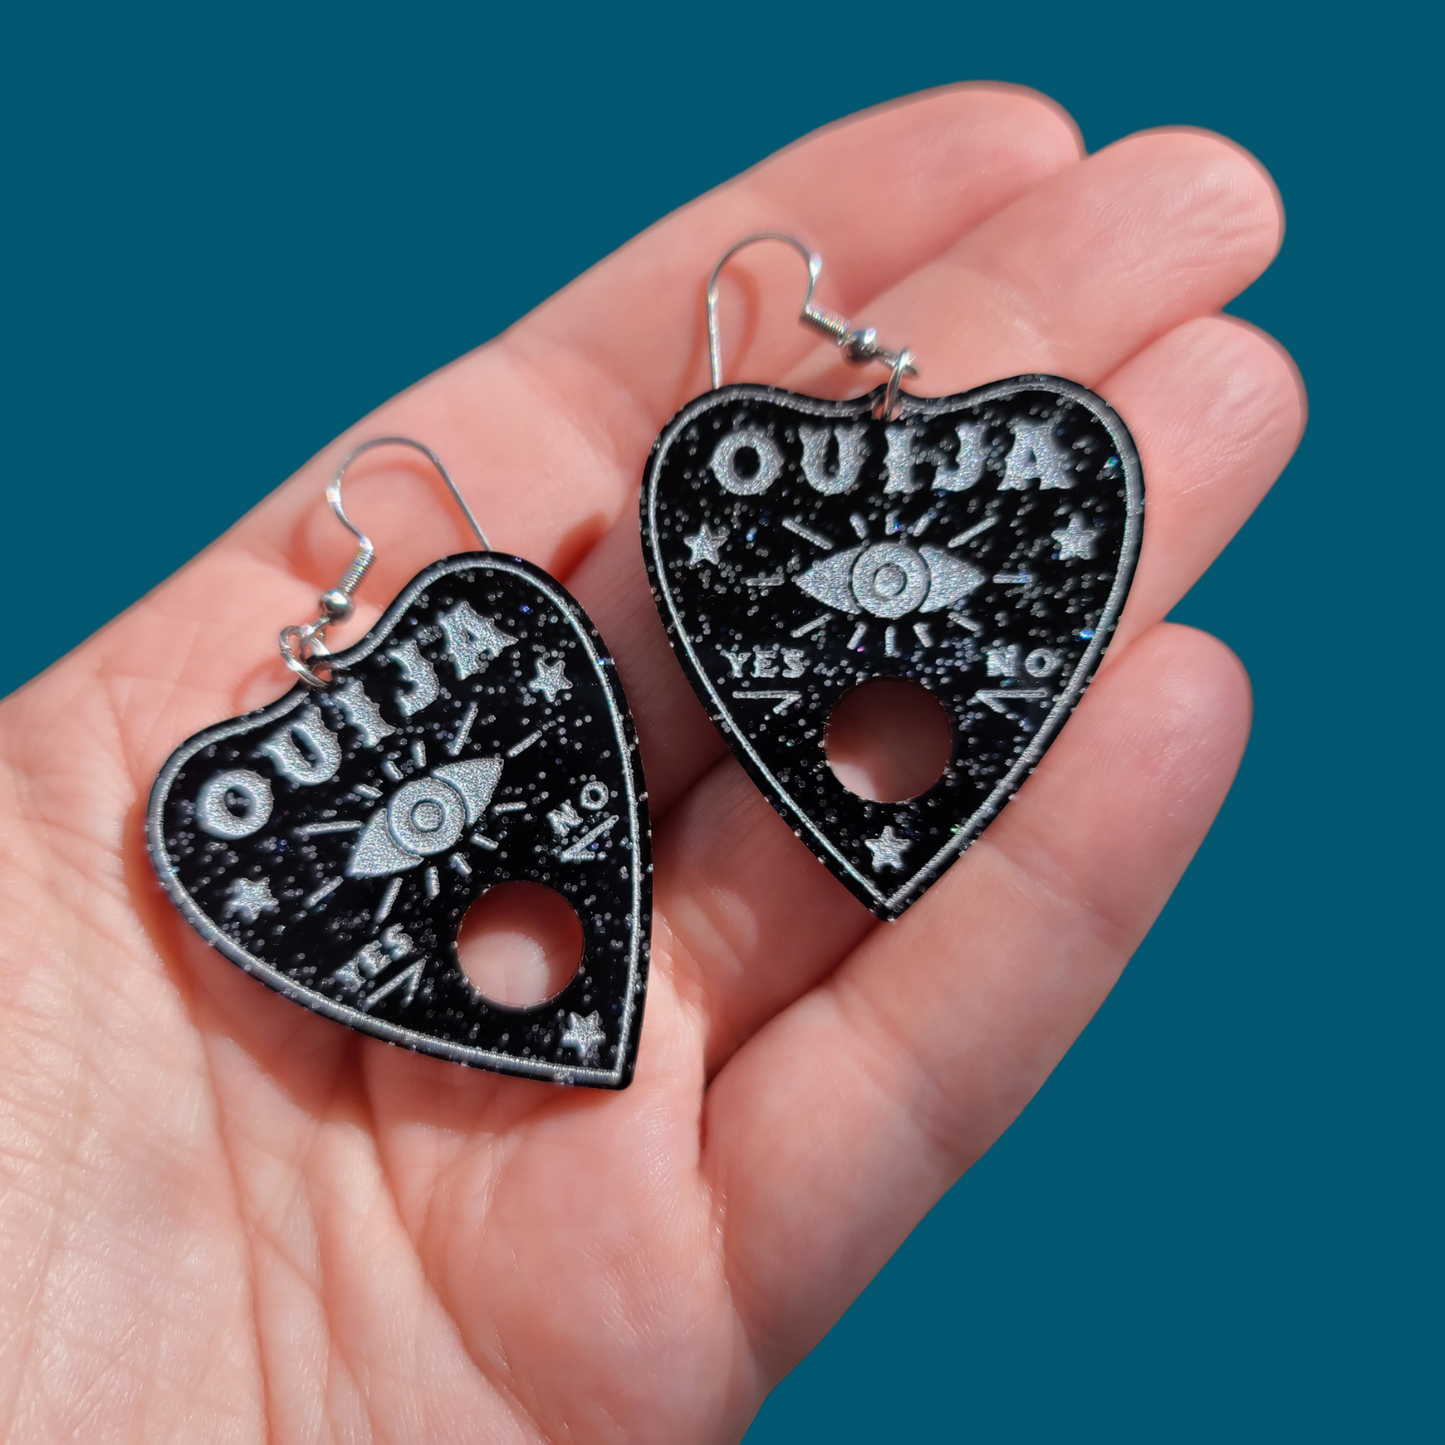 Ouija Planchettes on Black Glitter Acrylic - Earrings - Laser Cut